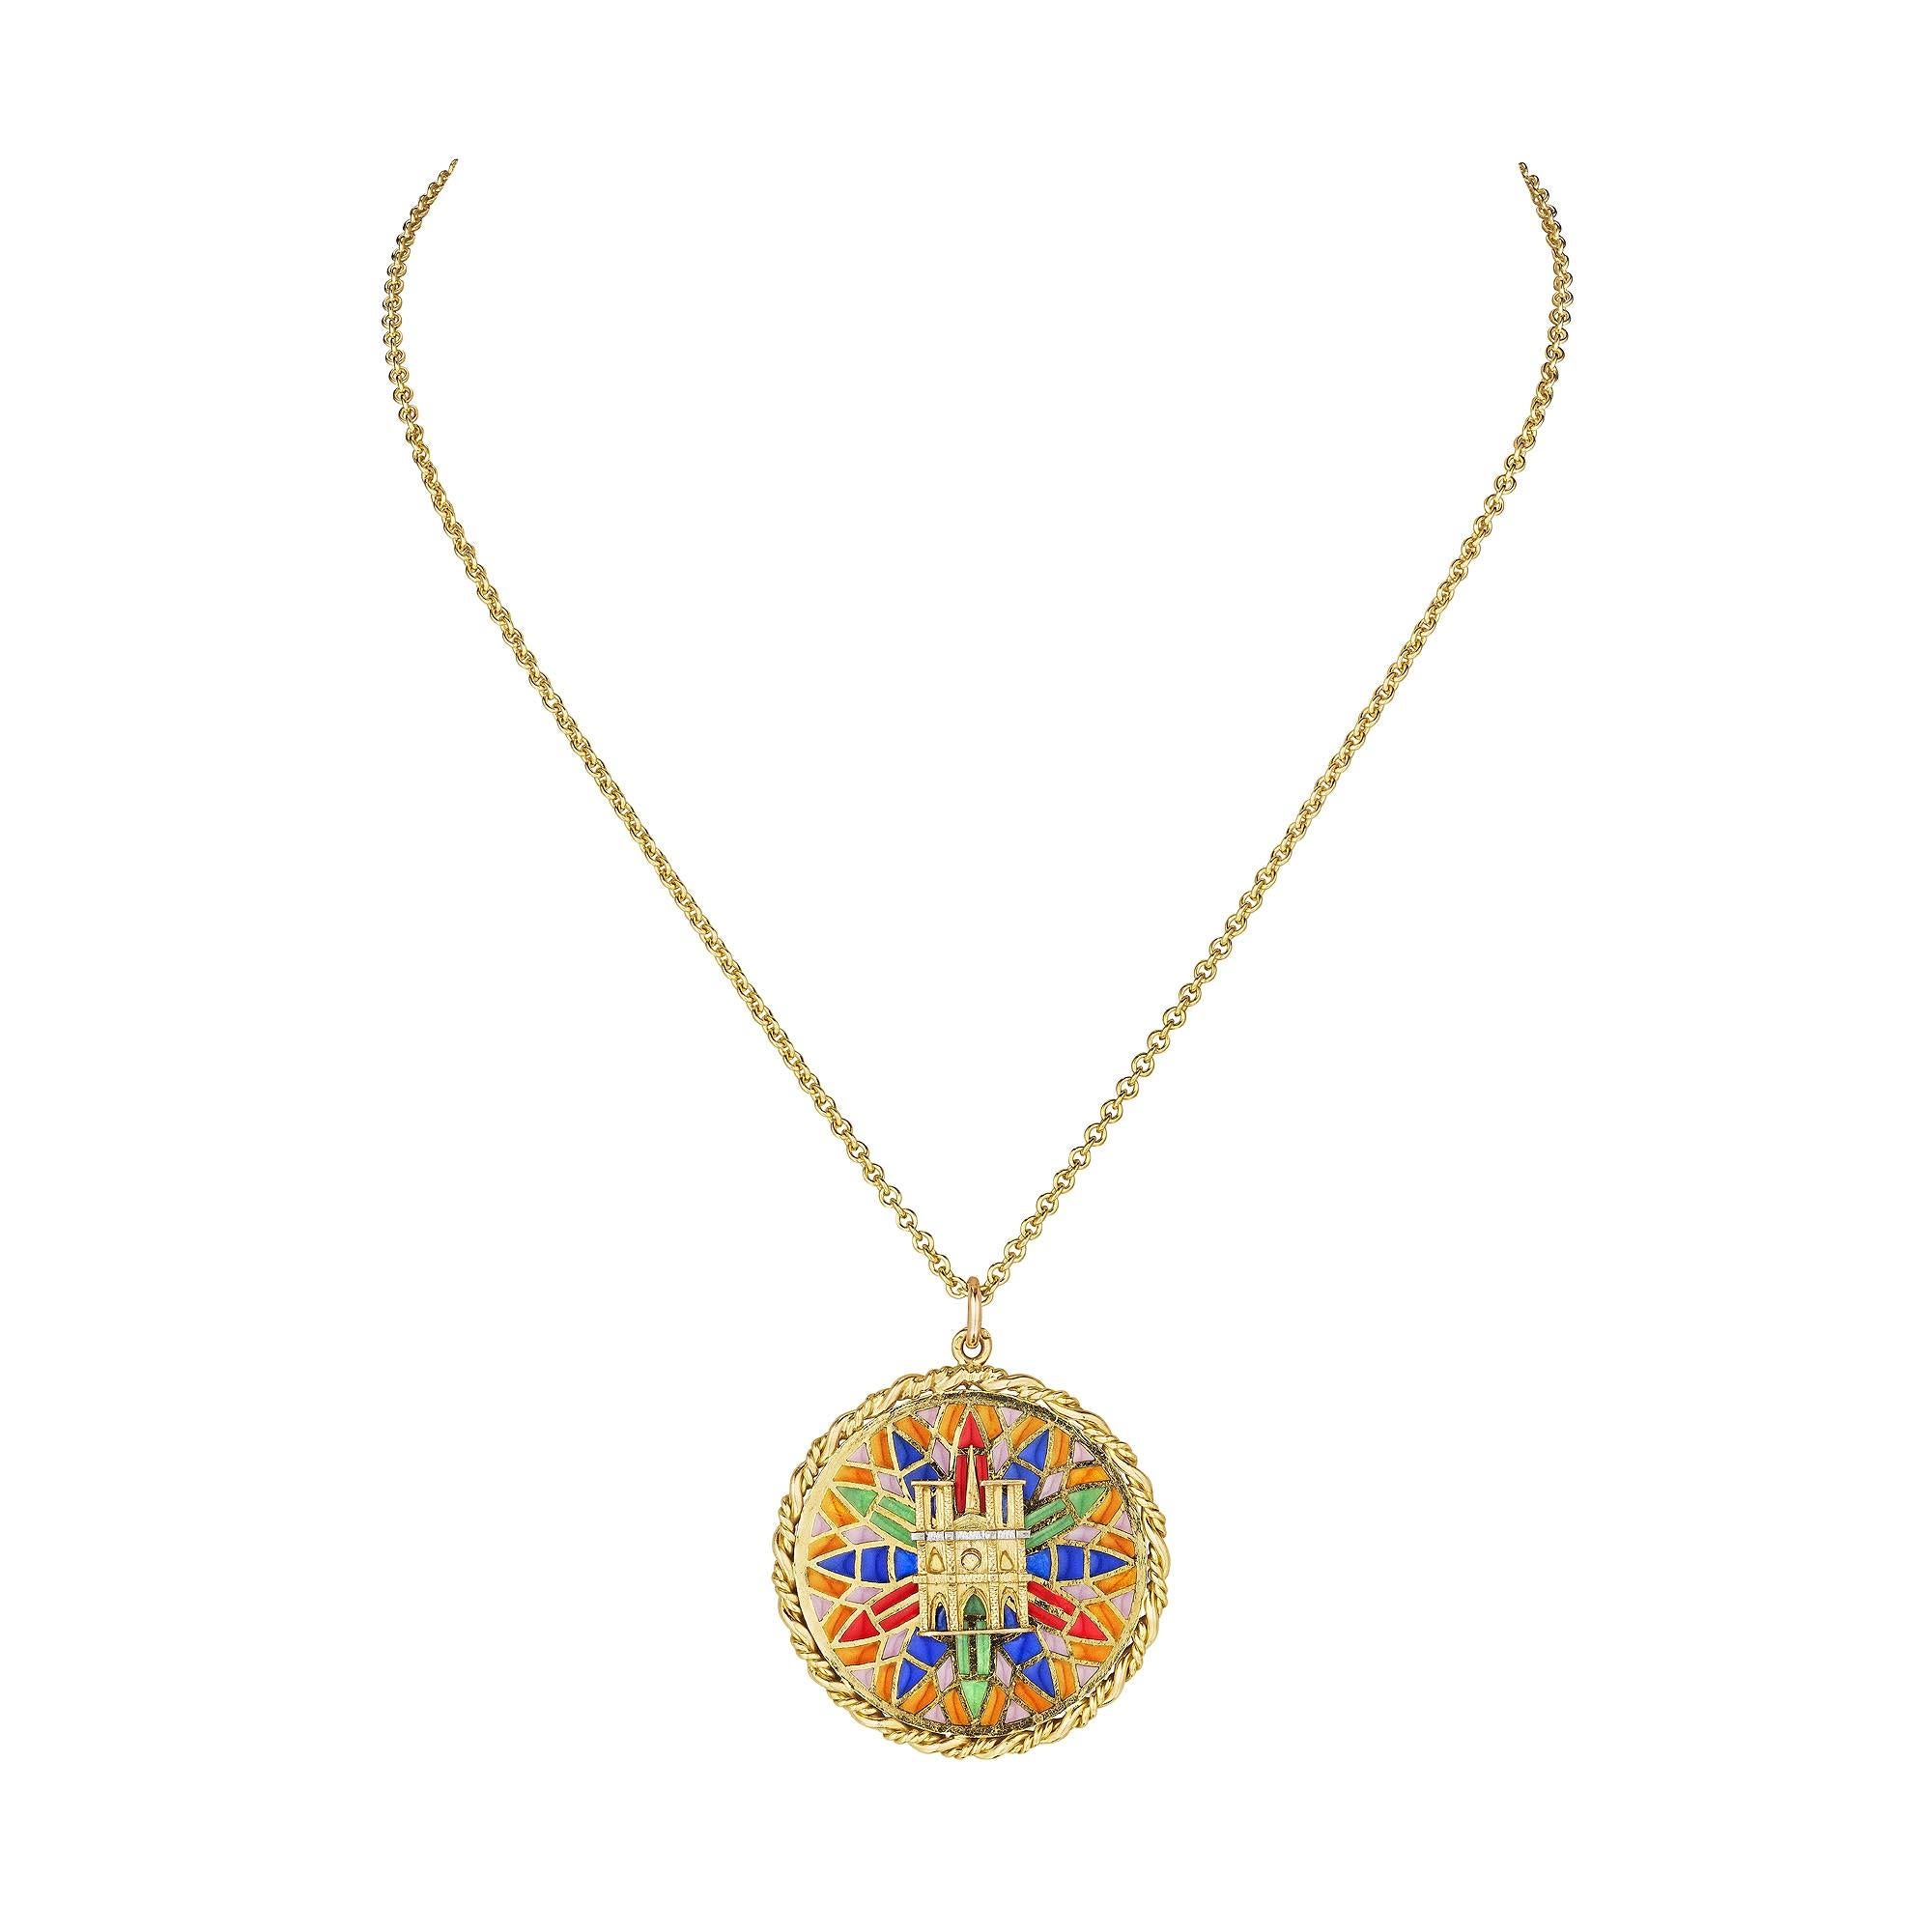 Modernist Cartier Gold Enamel Vintage Notre Dame Charm Pendant Necklace